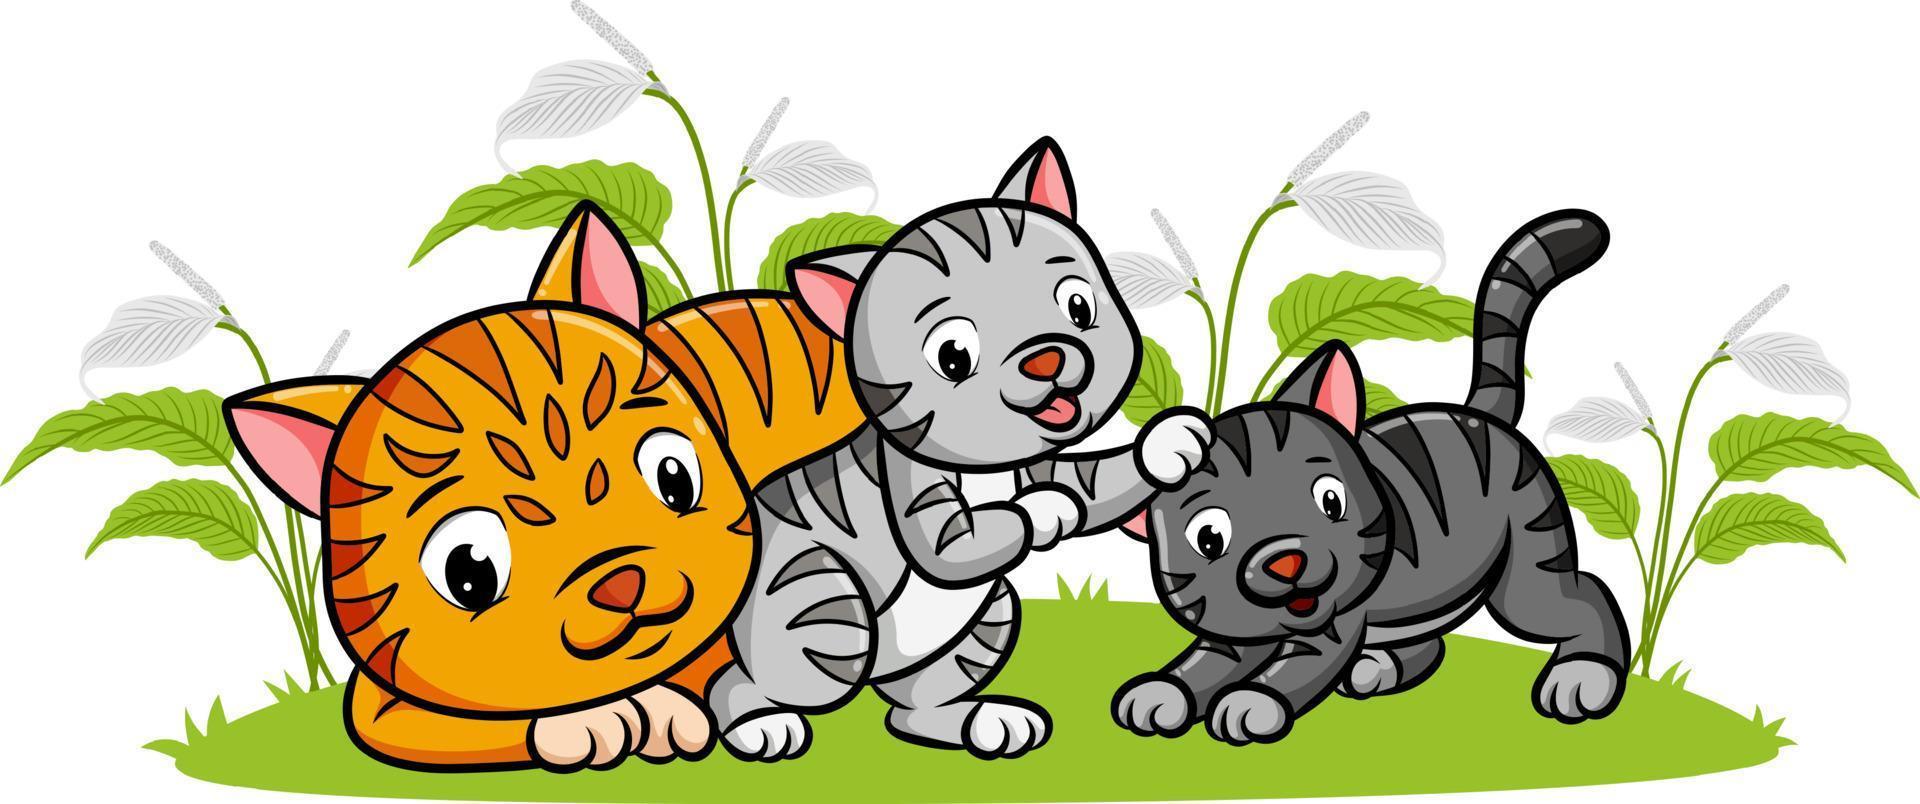 os três gatos estão brincando juntos no jardim vetor